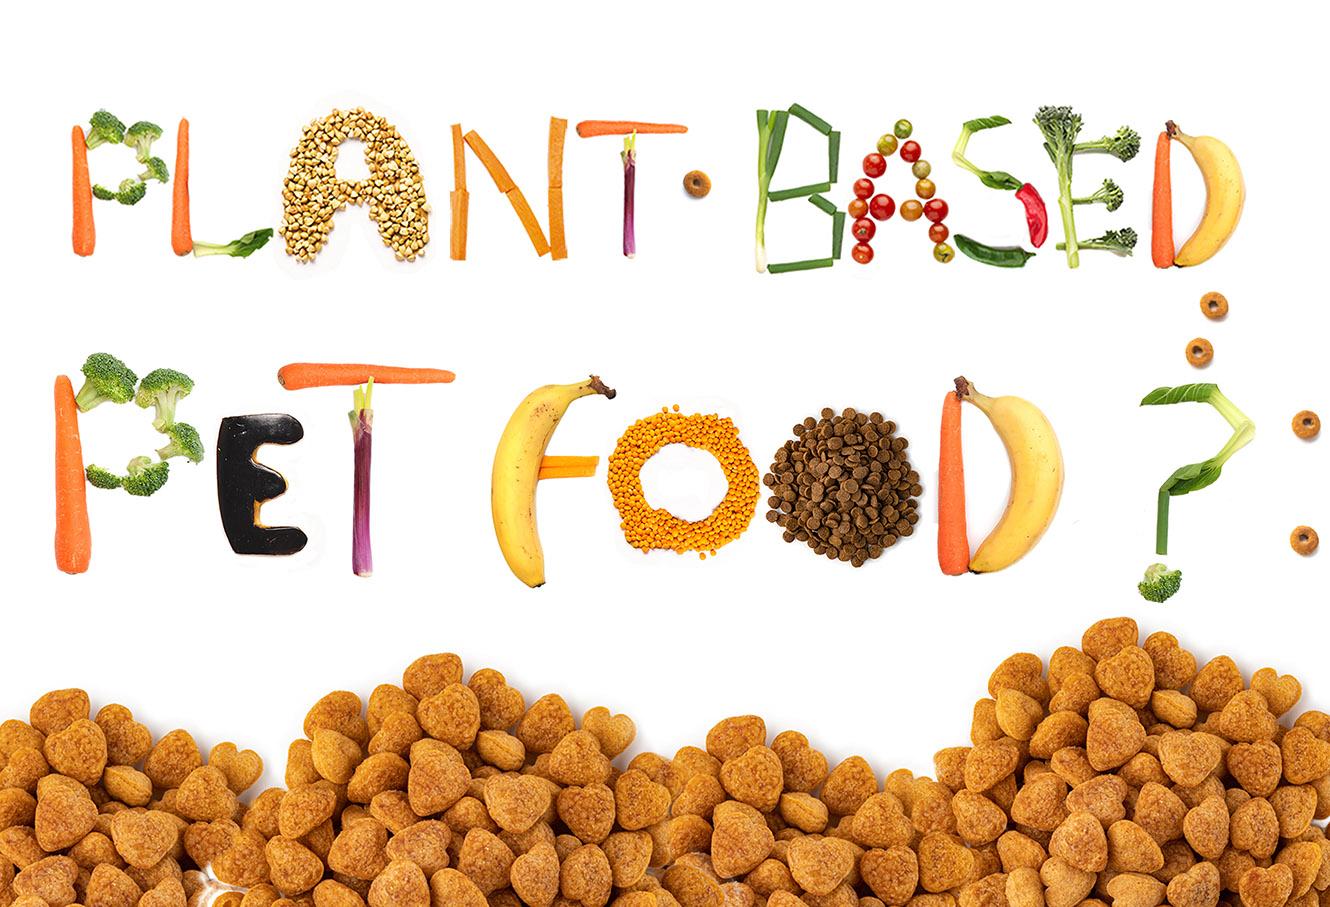 Plant-based pet food, del mito a la realidad: ¿es un producto viable?